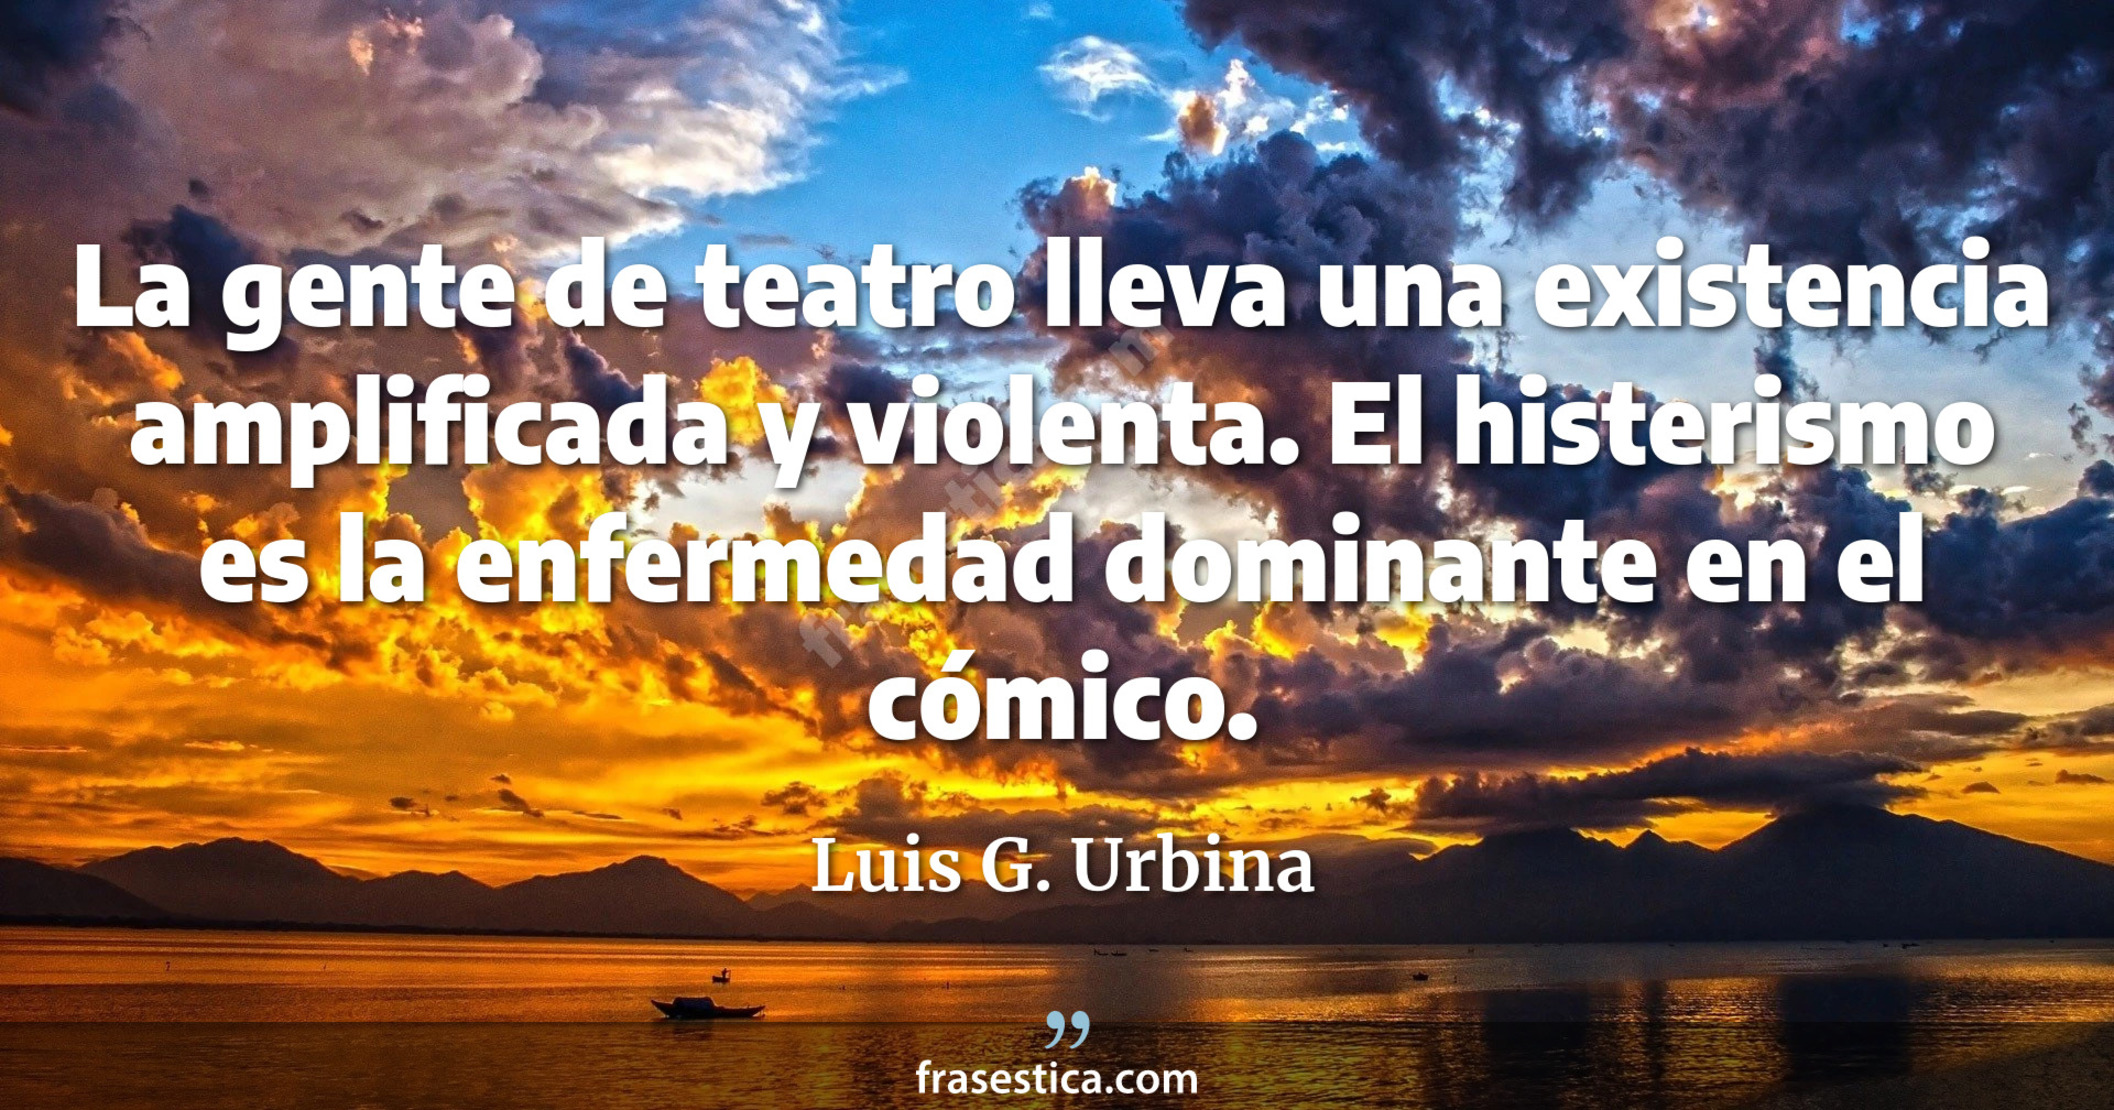 La gente de teatro lleva una existencia amplificada y violenta. El histerismo es la enfermedad dominante en el cómico. - Luis G. Urbina